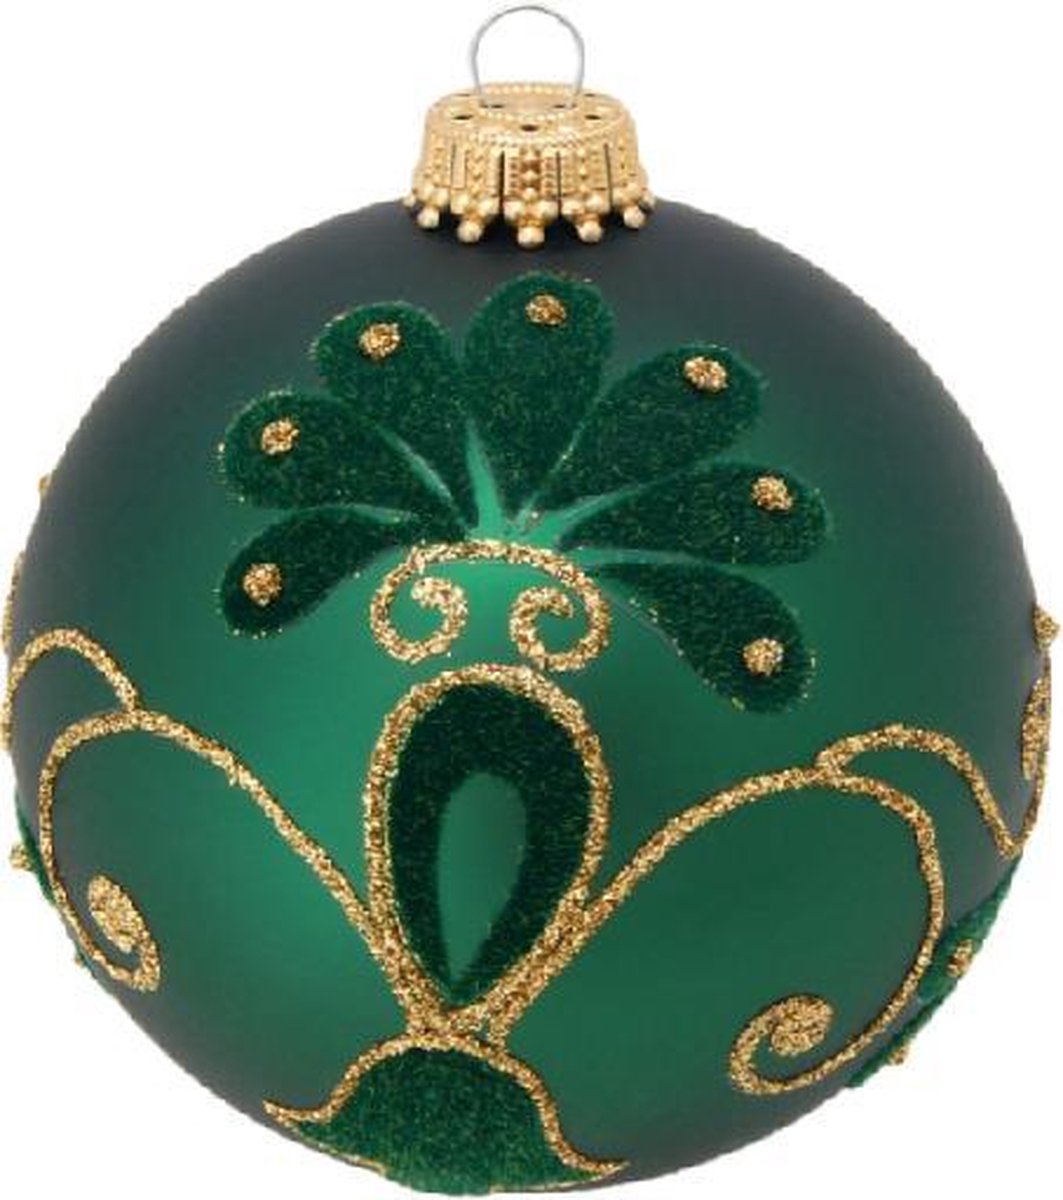 Stijlvolle Groene Kerstballen met Fluweel en Glitters - set van 3 stuks - met de hand gedecoreerd